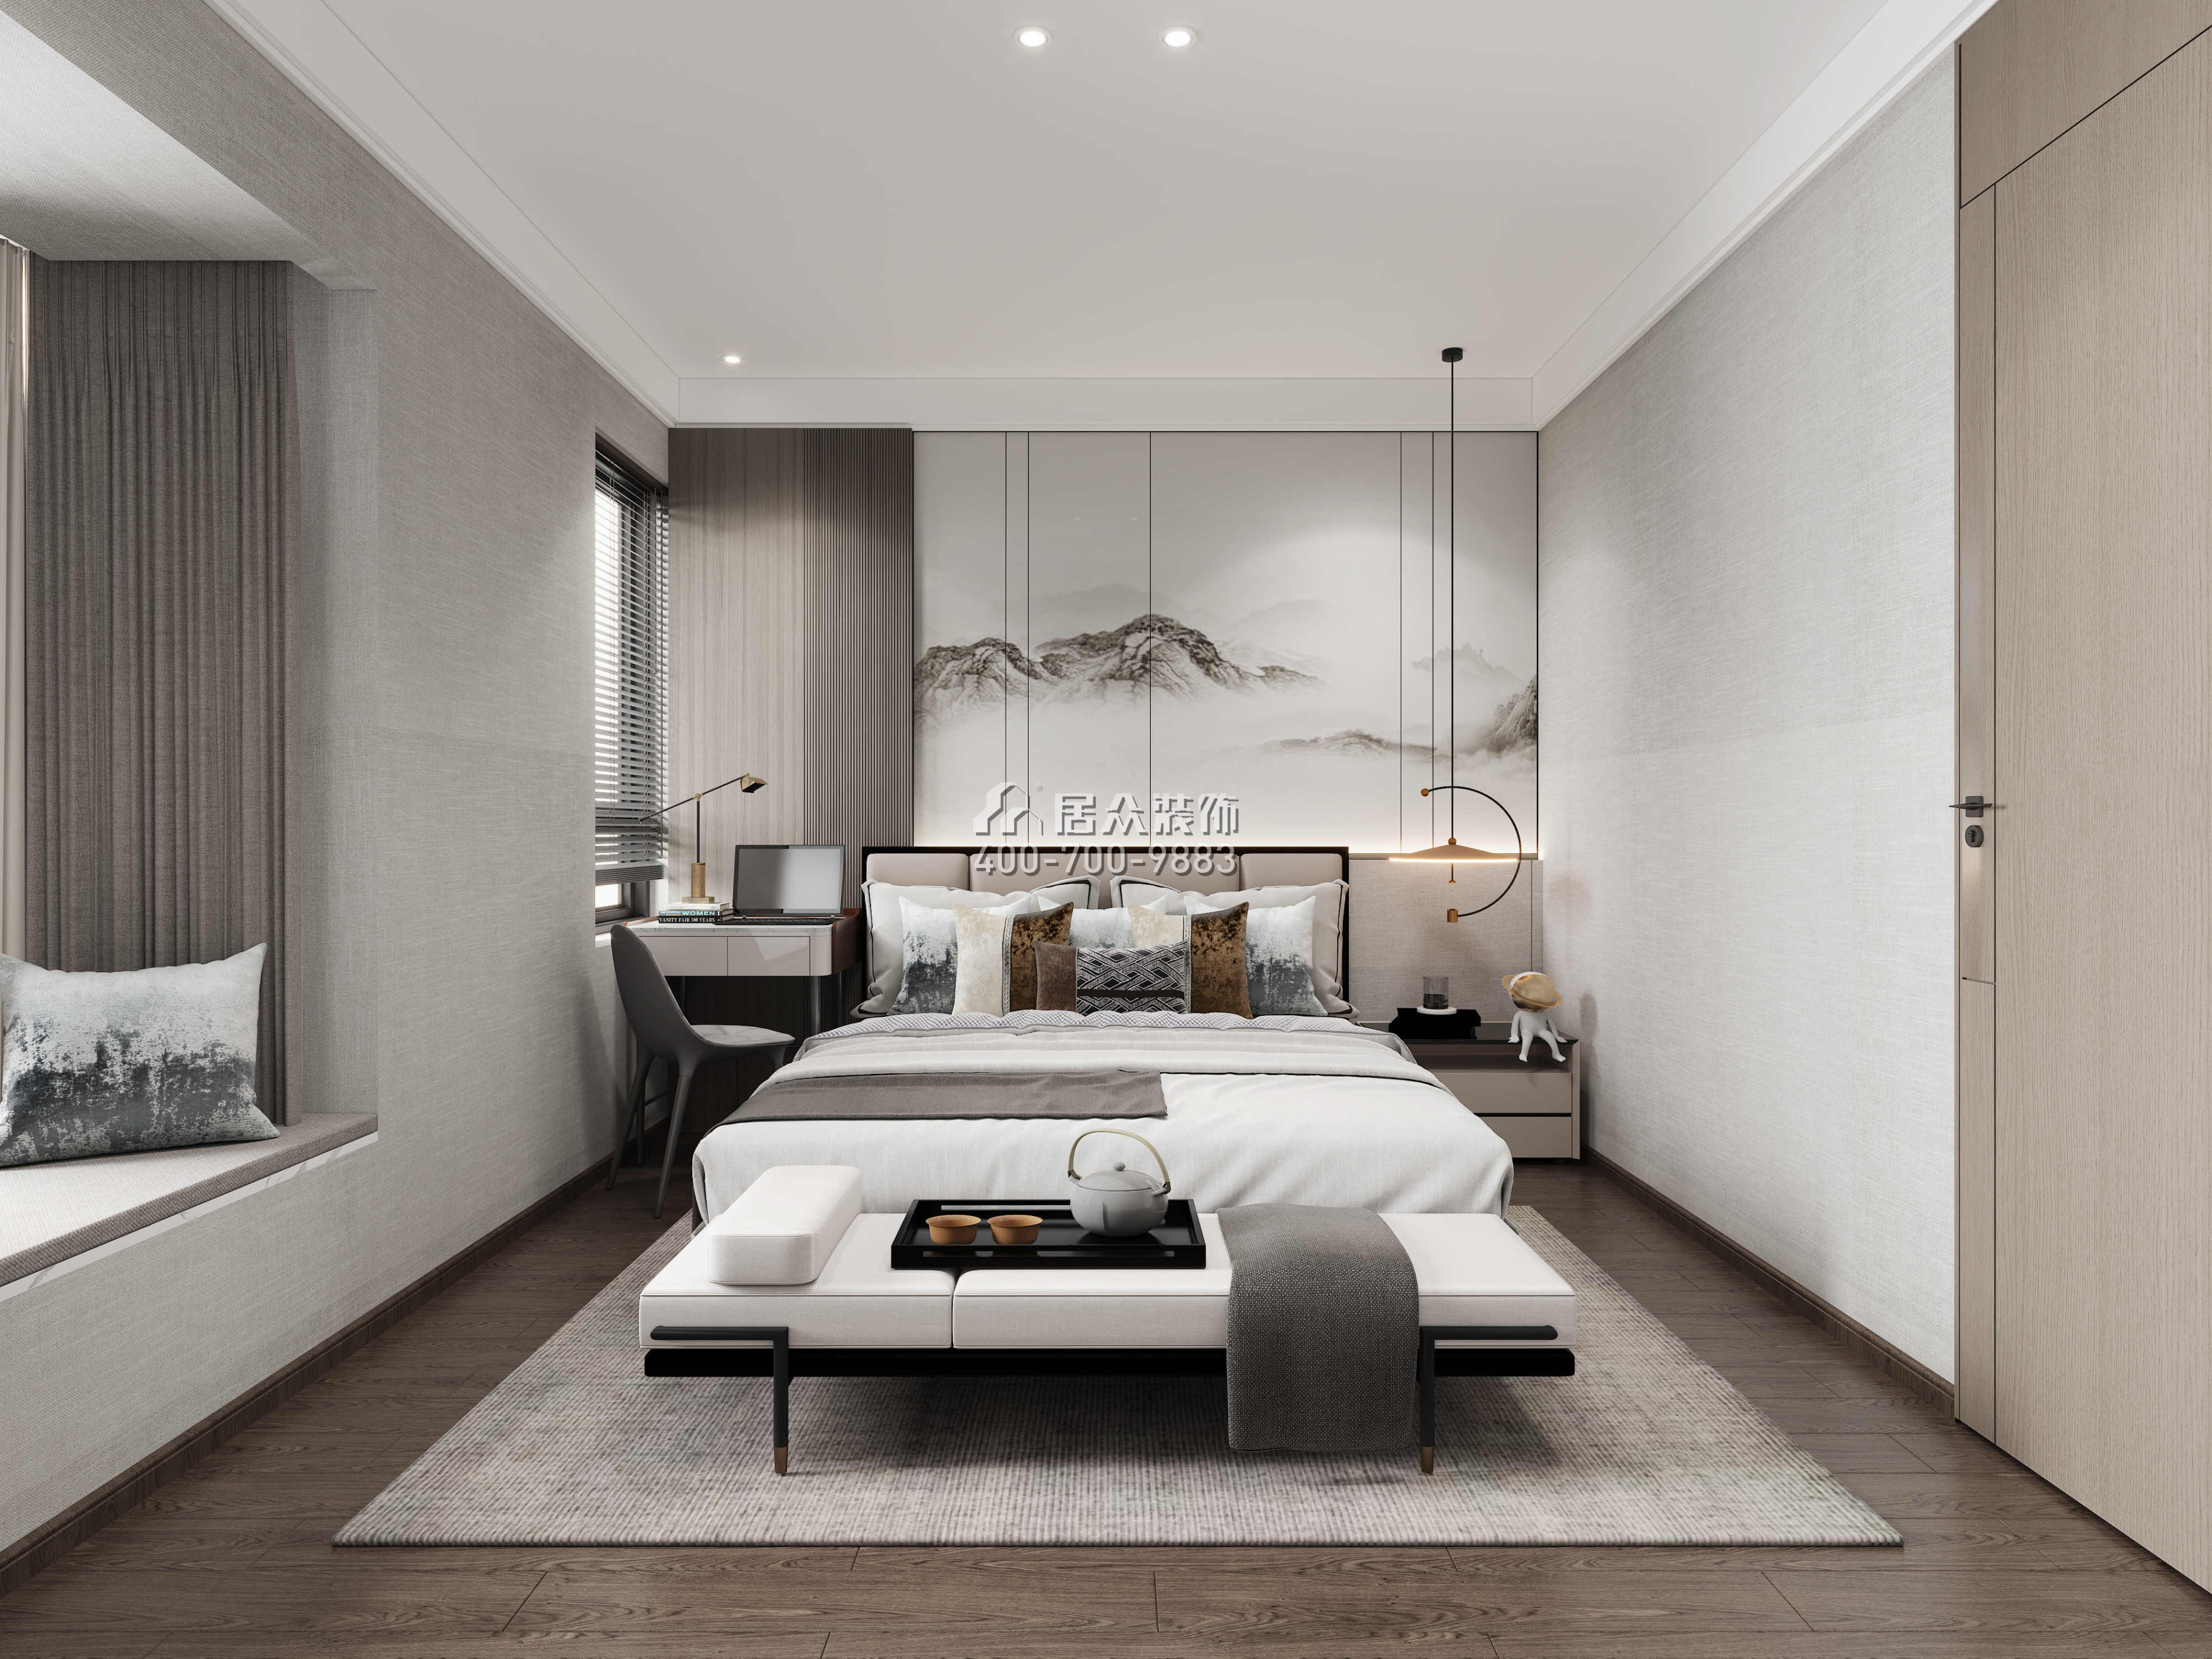 宝利豪庭500平方米中式风格复式户型卧室装修效果图